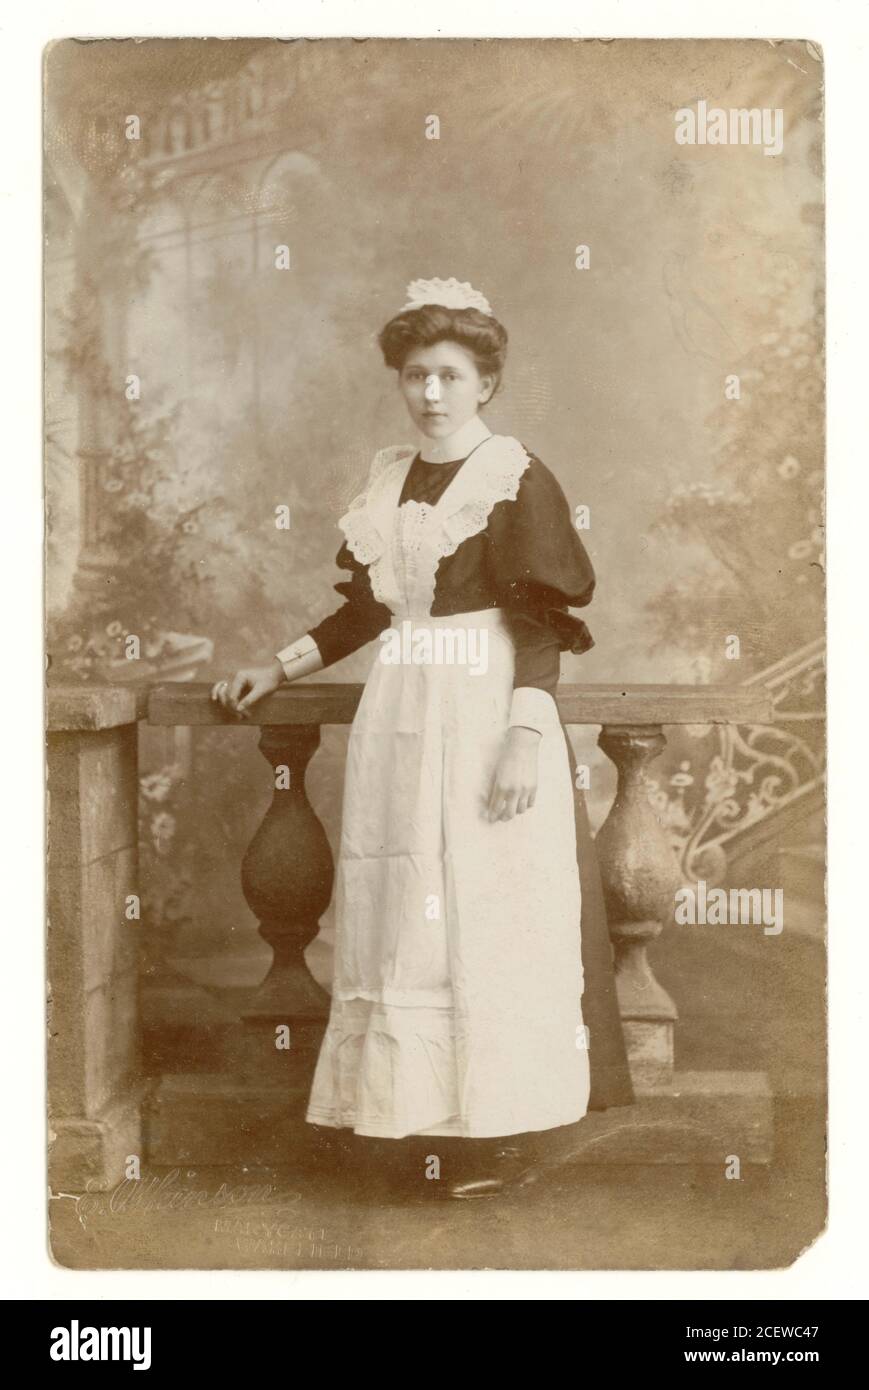 Début des années 1900, portrait studio de jolie femme de ménage de salon par Atkinson de Marygate, Wakefield, U.K. vers 1906 Banque D'Images